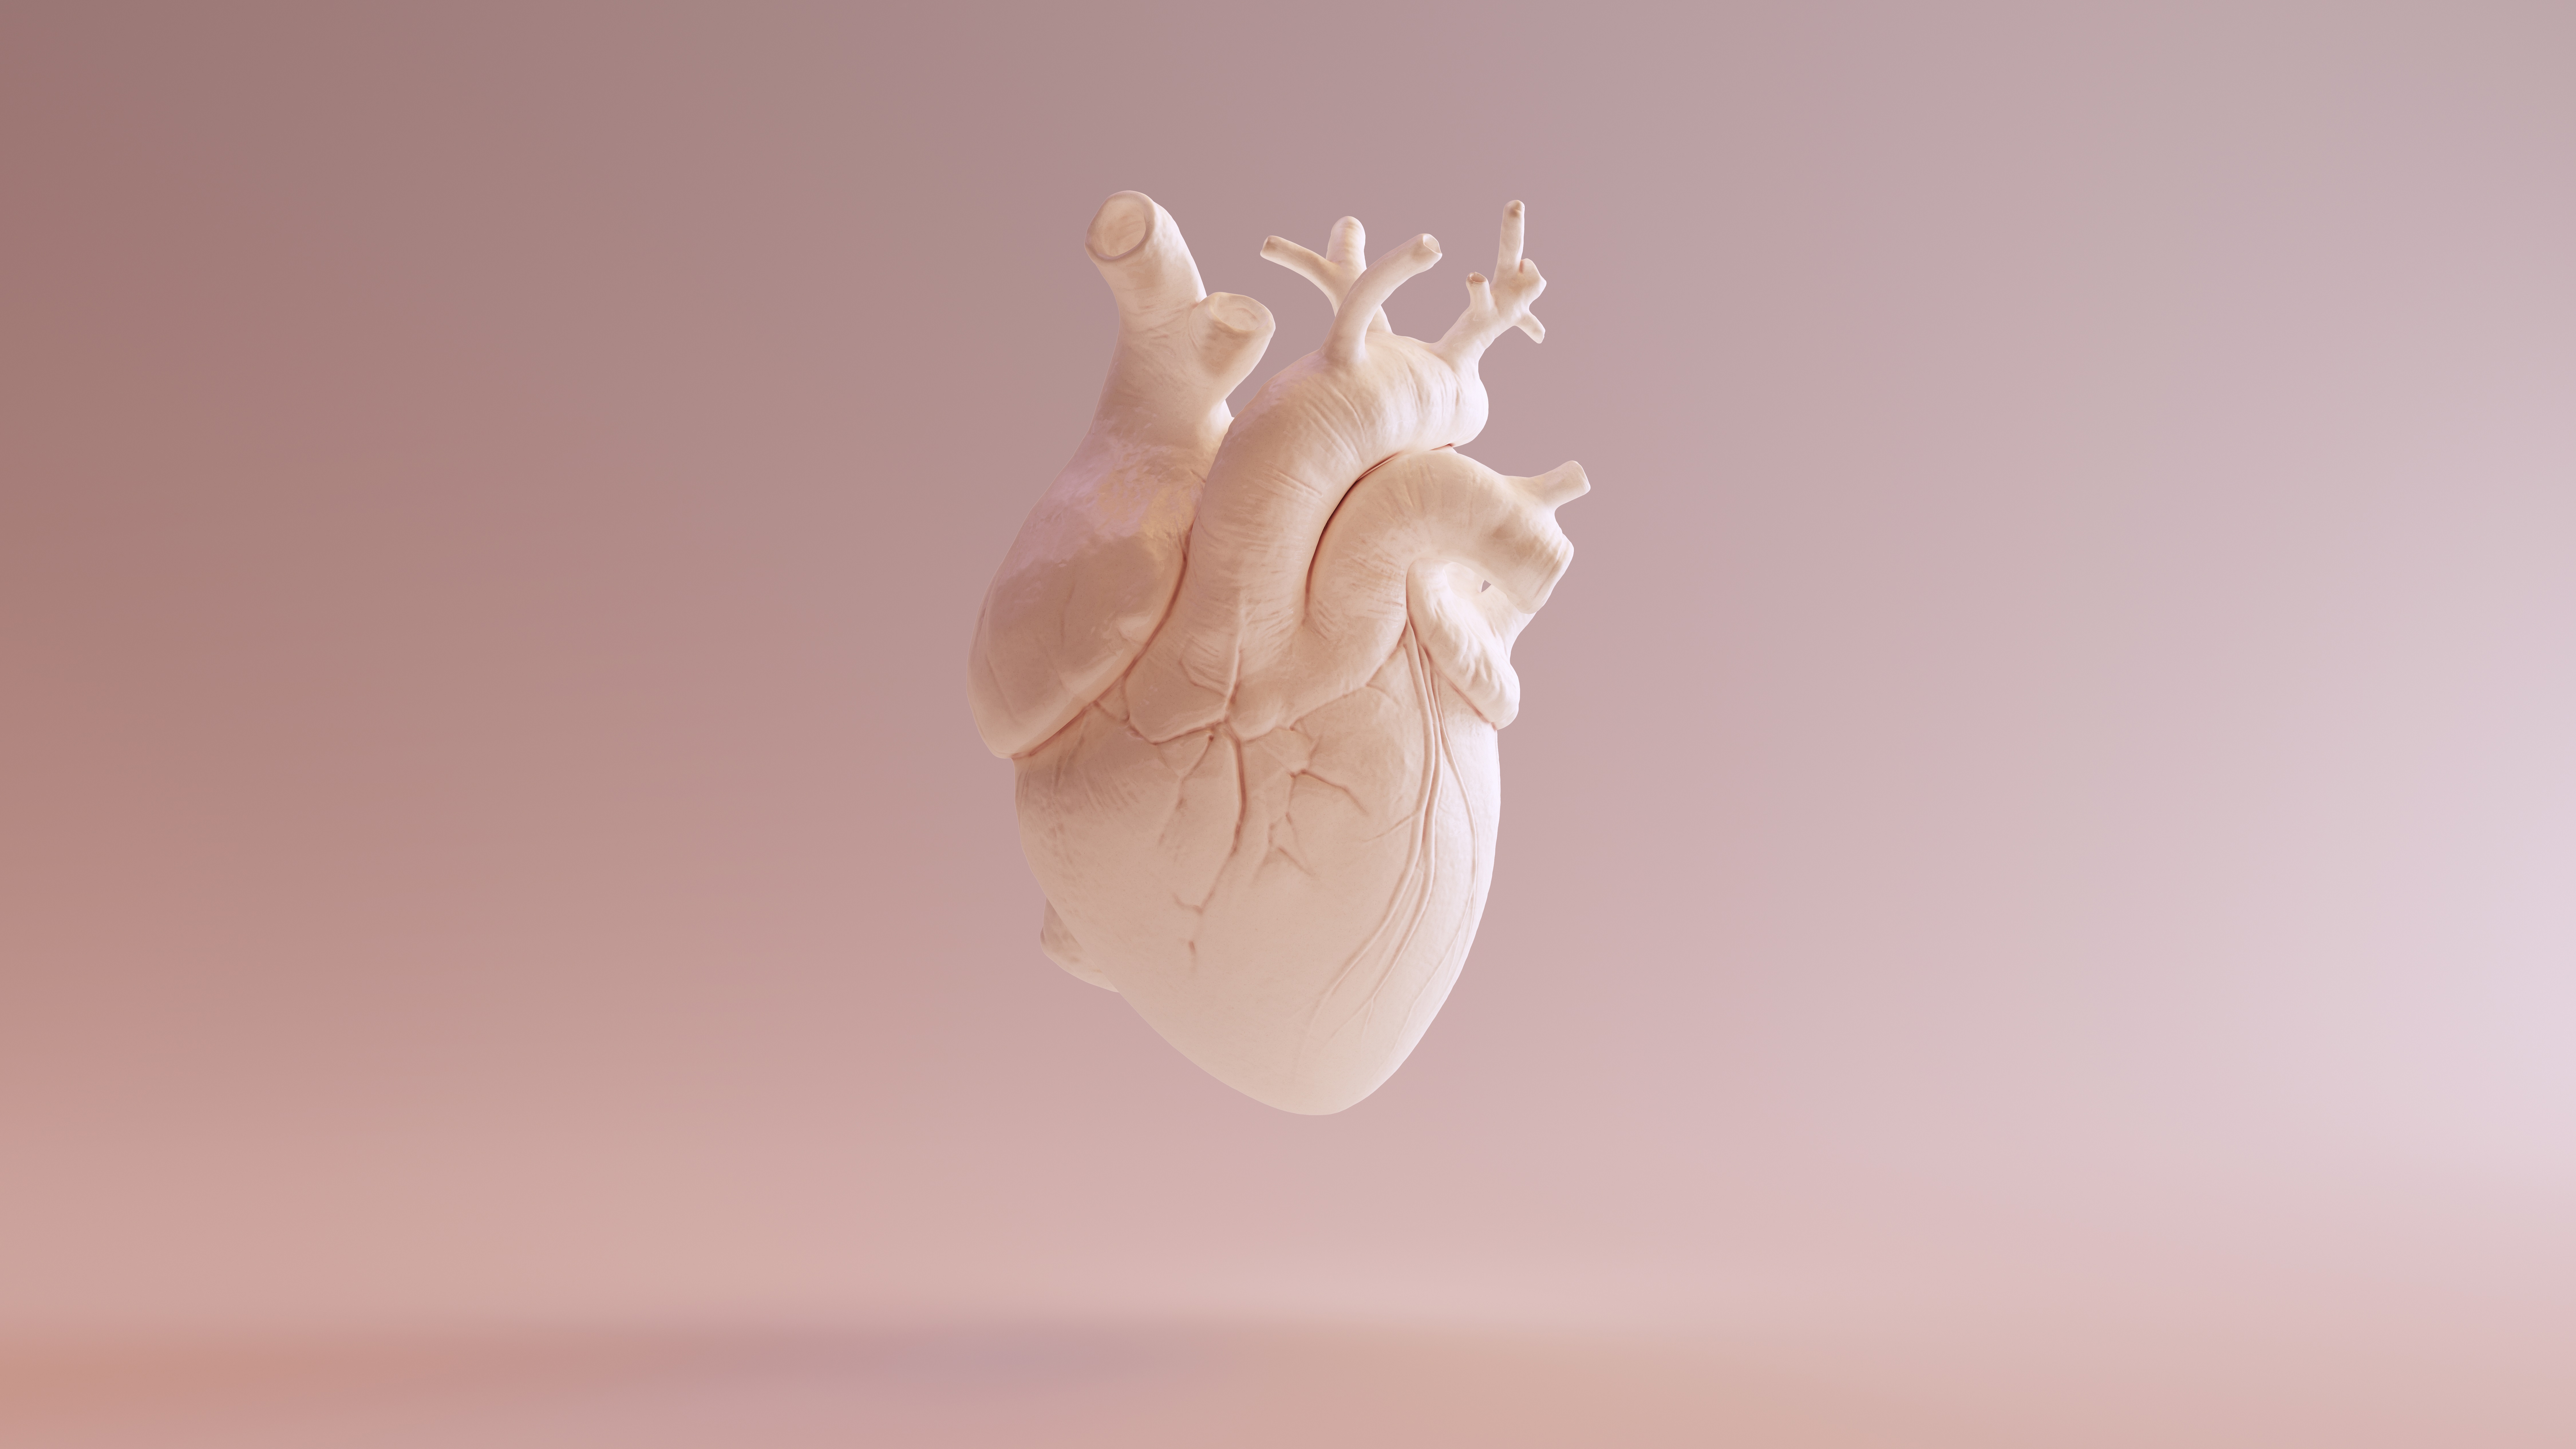 Featured image for “Chirurgie cardiacă sau TAVI în stenoza aortică?”